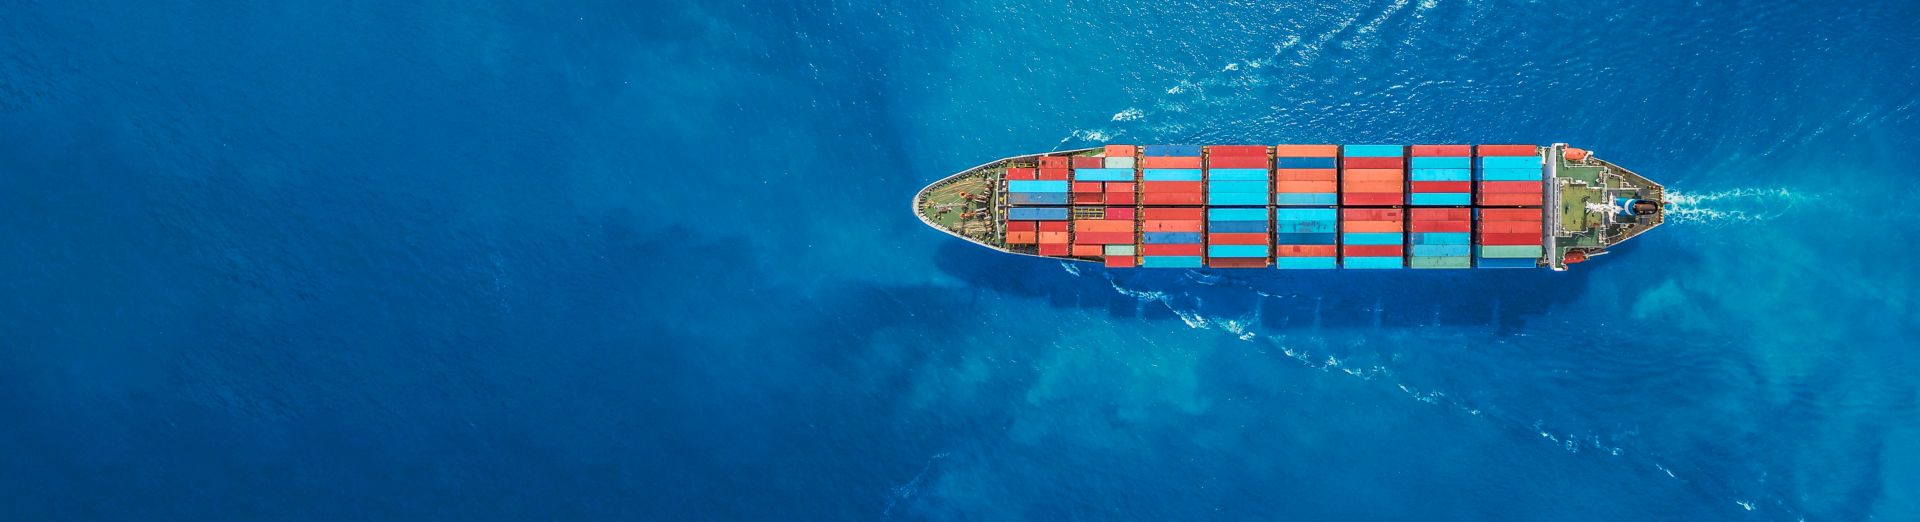 Immagine di nave in un corpo d'acqua che trasporta forniture necessarie per la gestione della supply chain